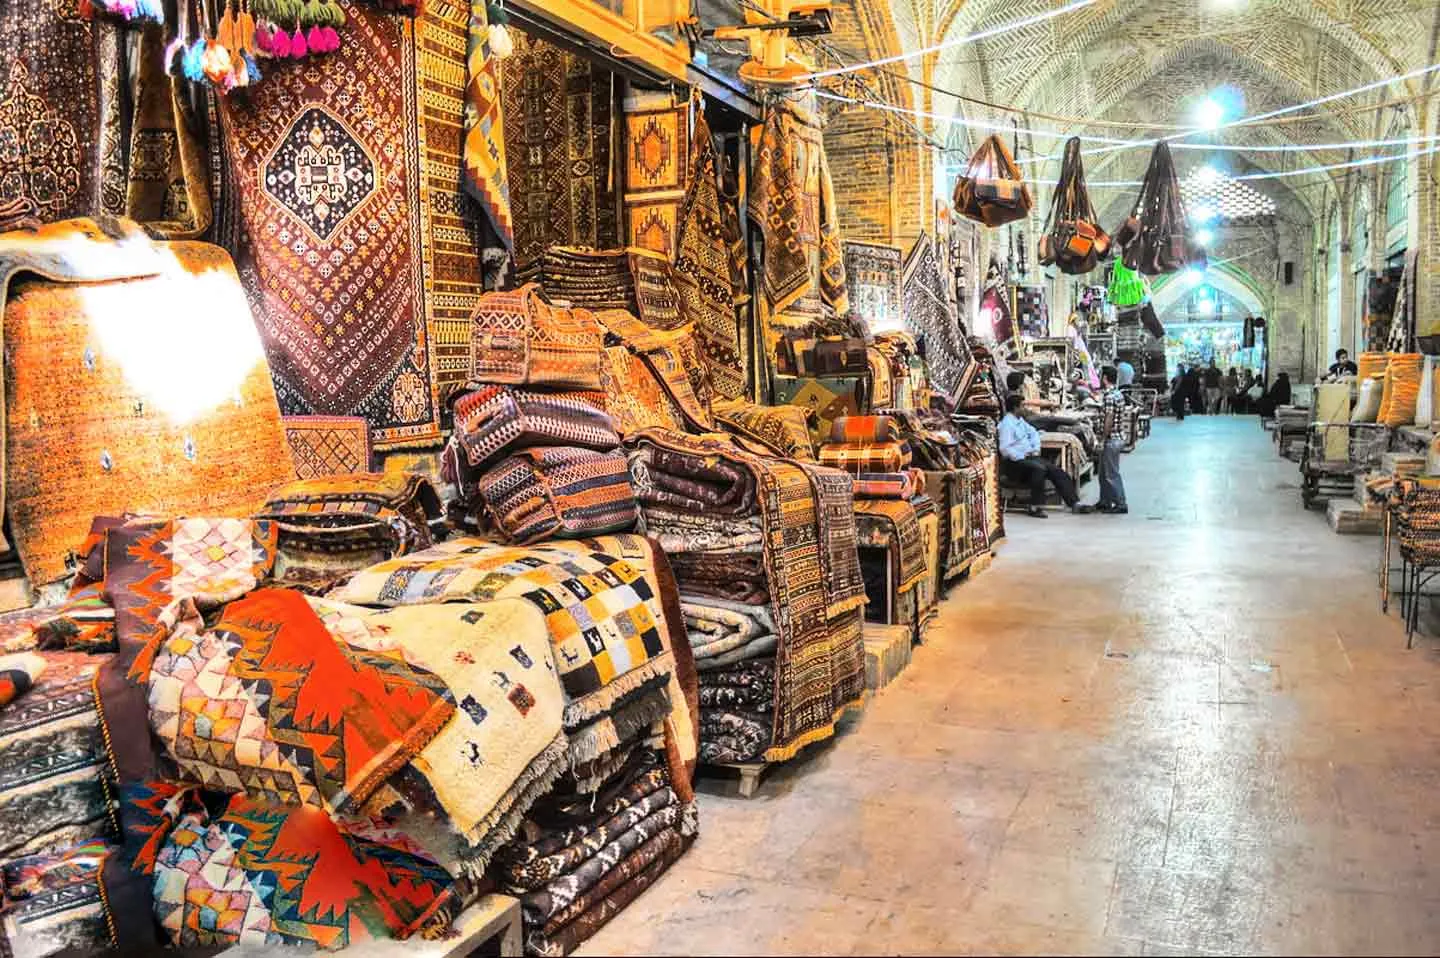 قدیمی ترین بازارهای تهران